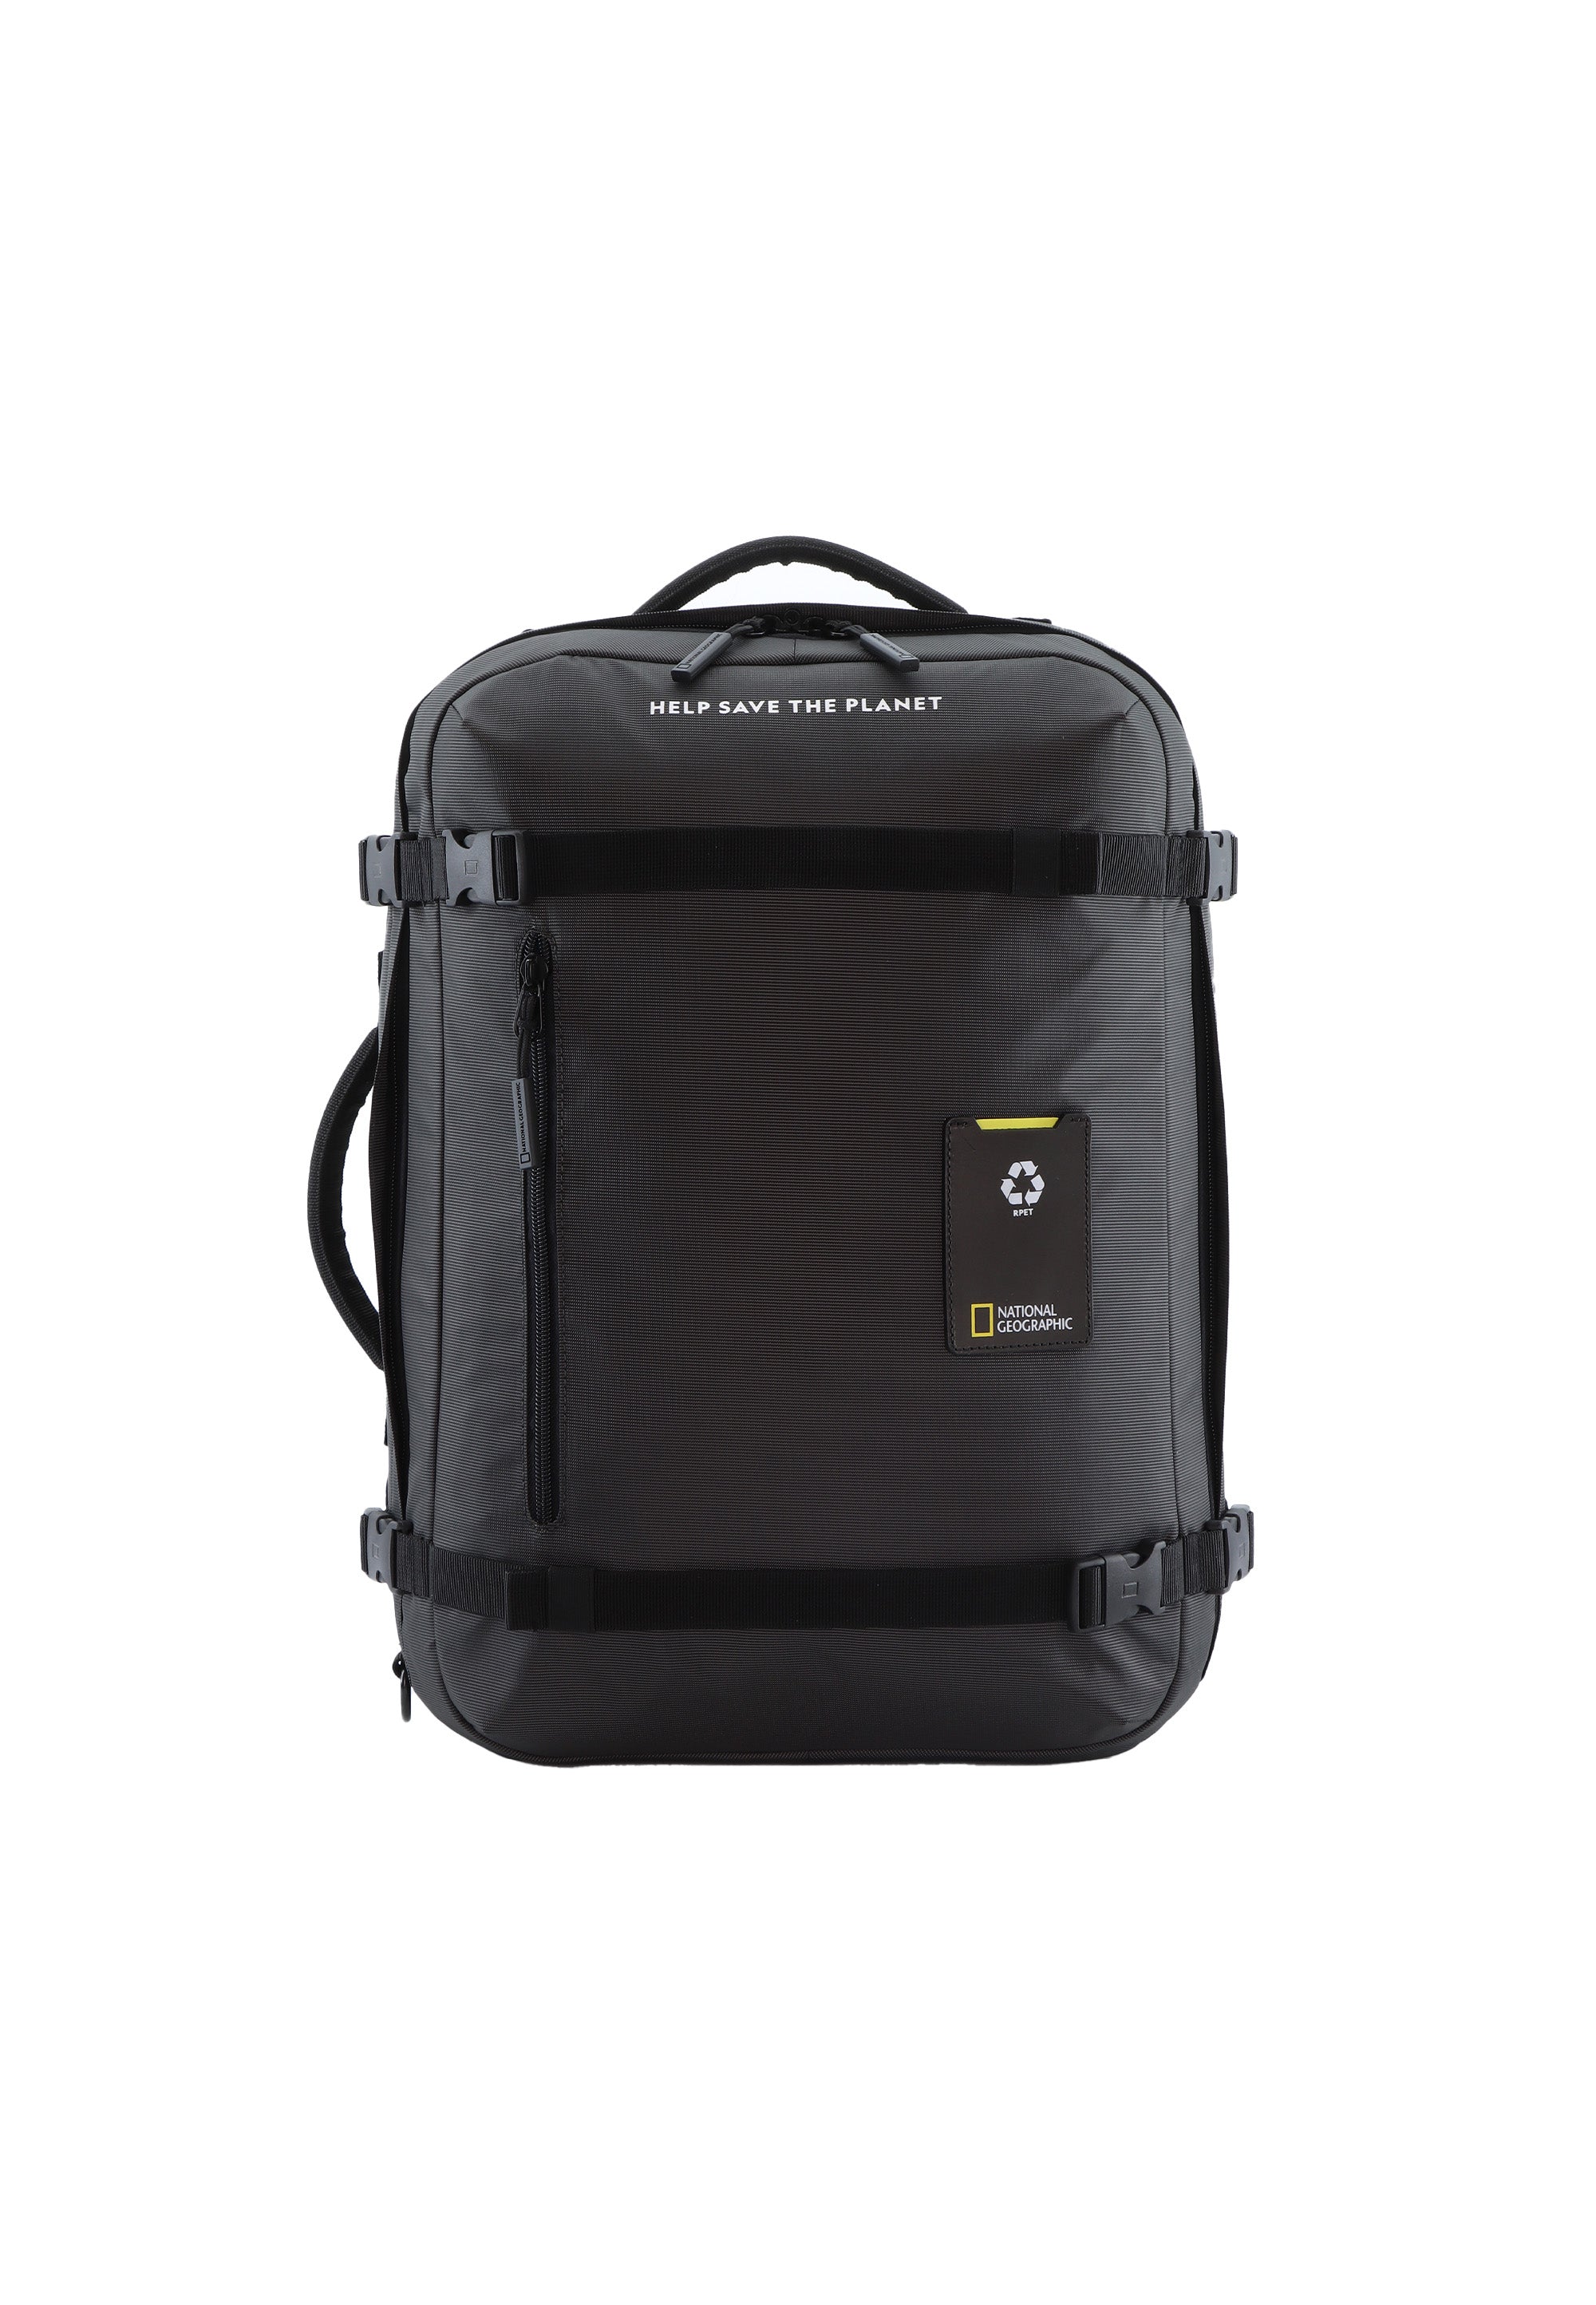 Laptoptasche Rucksack Schultertasche der Nat Geo Ocean Serie in schwarz RPET N20907